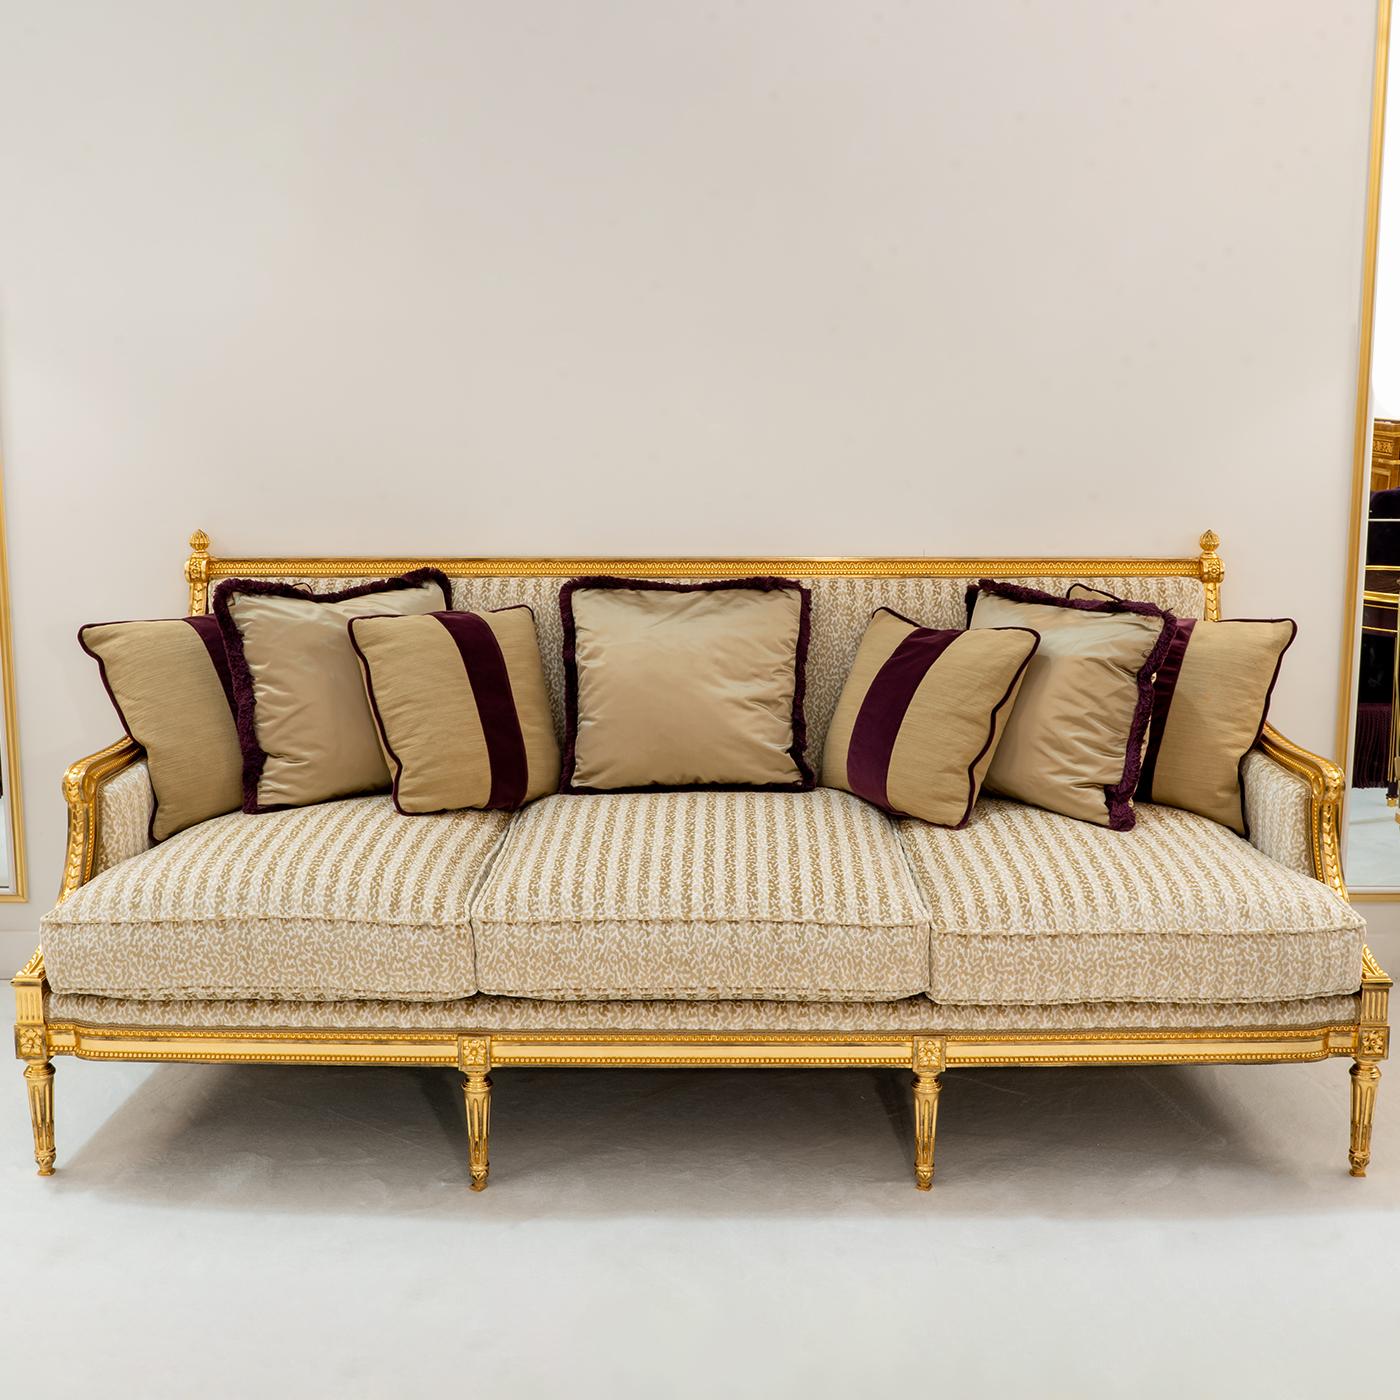 Ce luxueux canapé rappelle les sièges des cours royales européennes. Recouvert de feuilles d'or, le cadre présente des détails minutieux obtenus grâce à un processus méticuleux de sculpture à la main qui implique l'unicité de chaque pièce. Un tissu